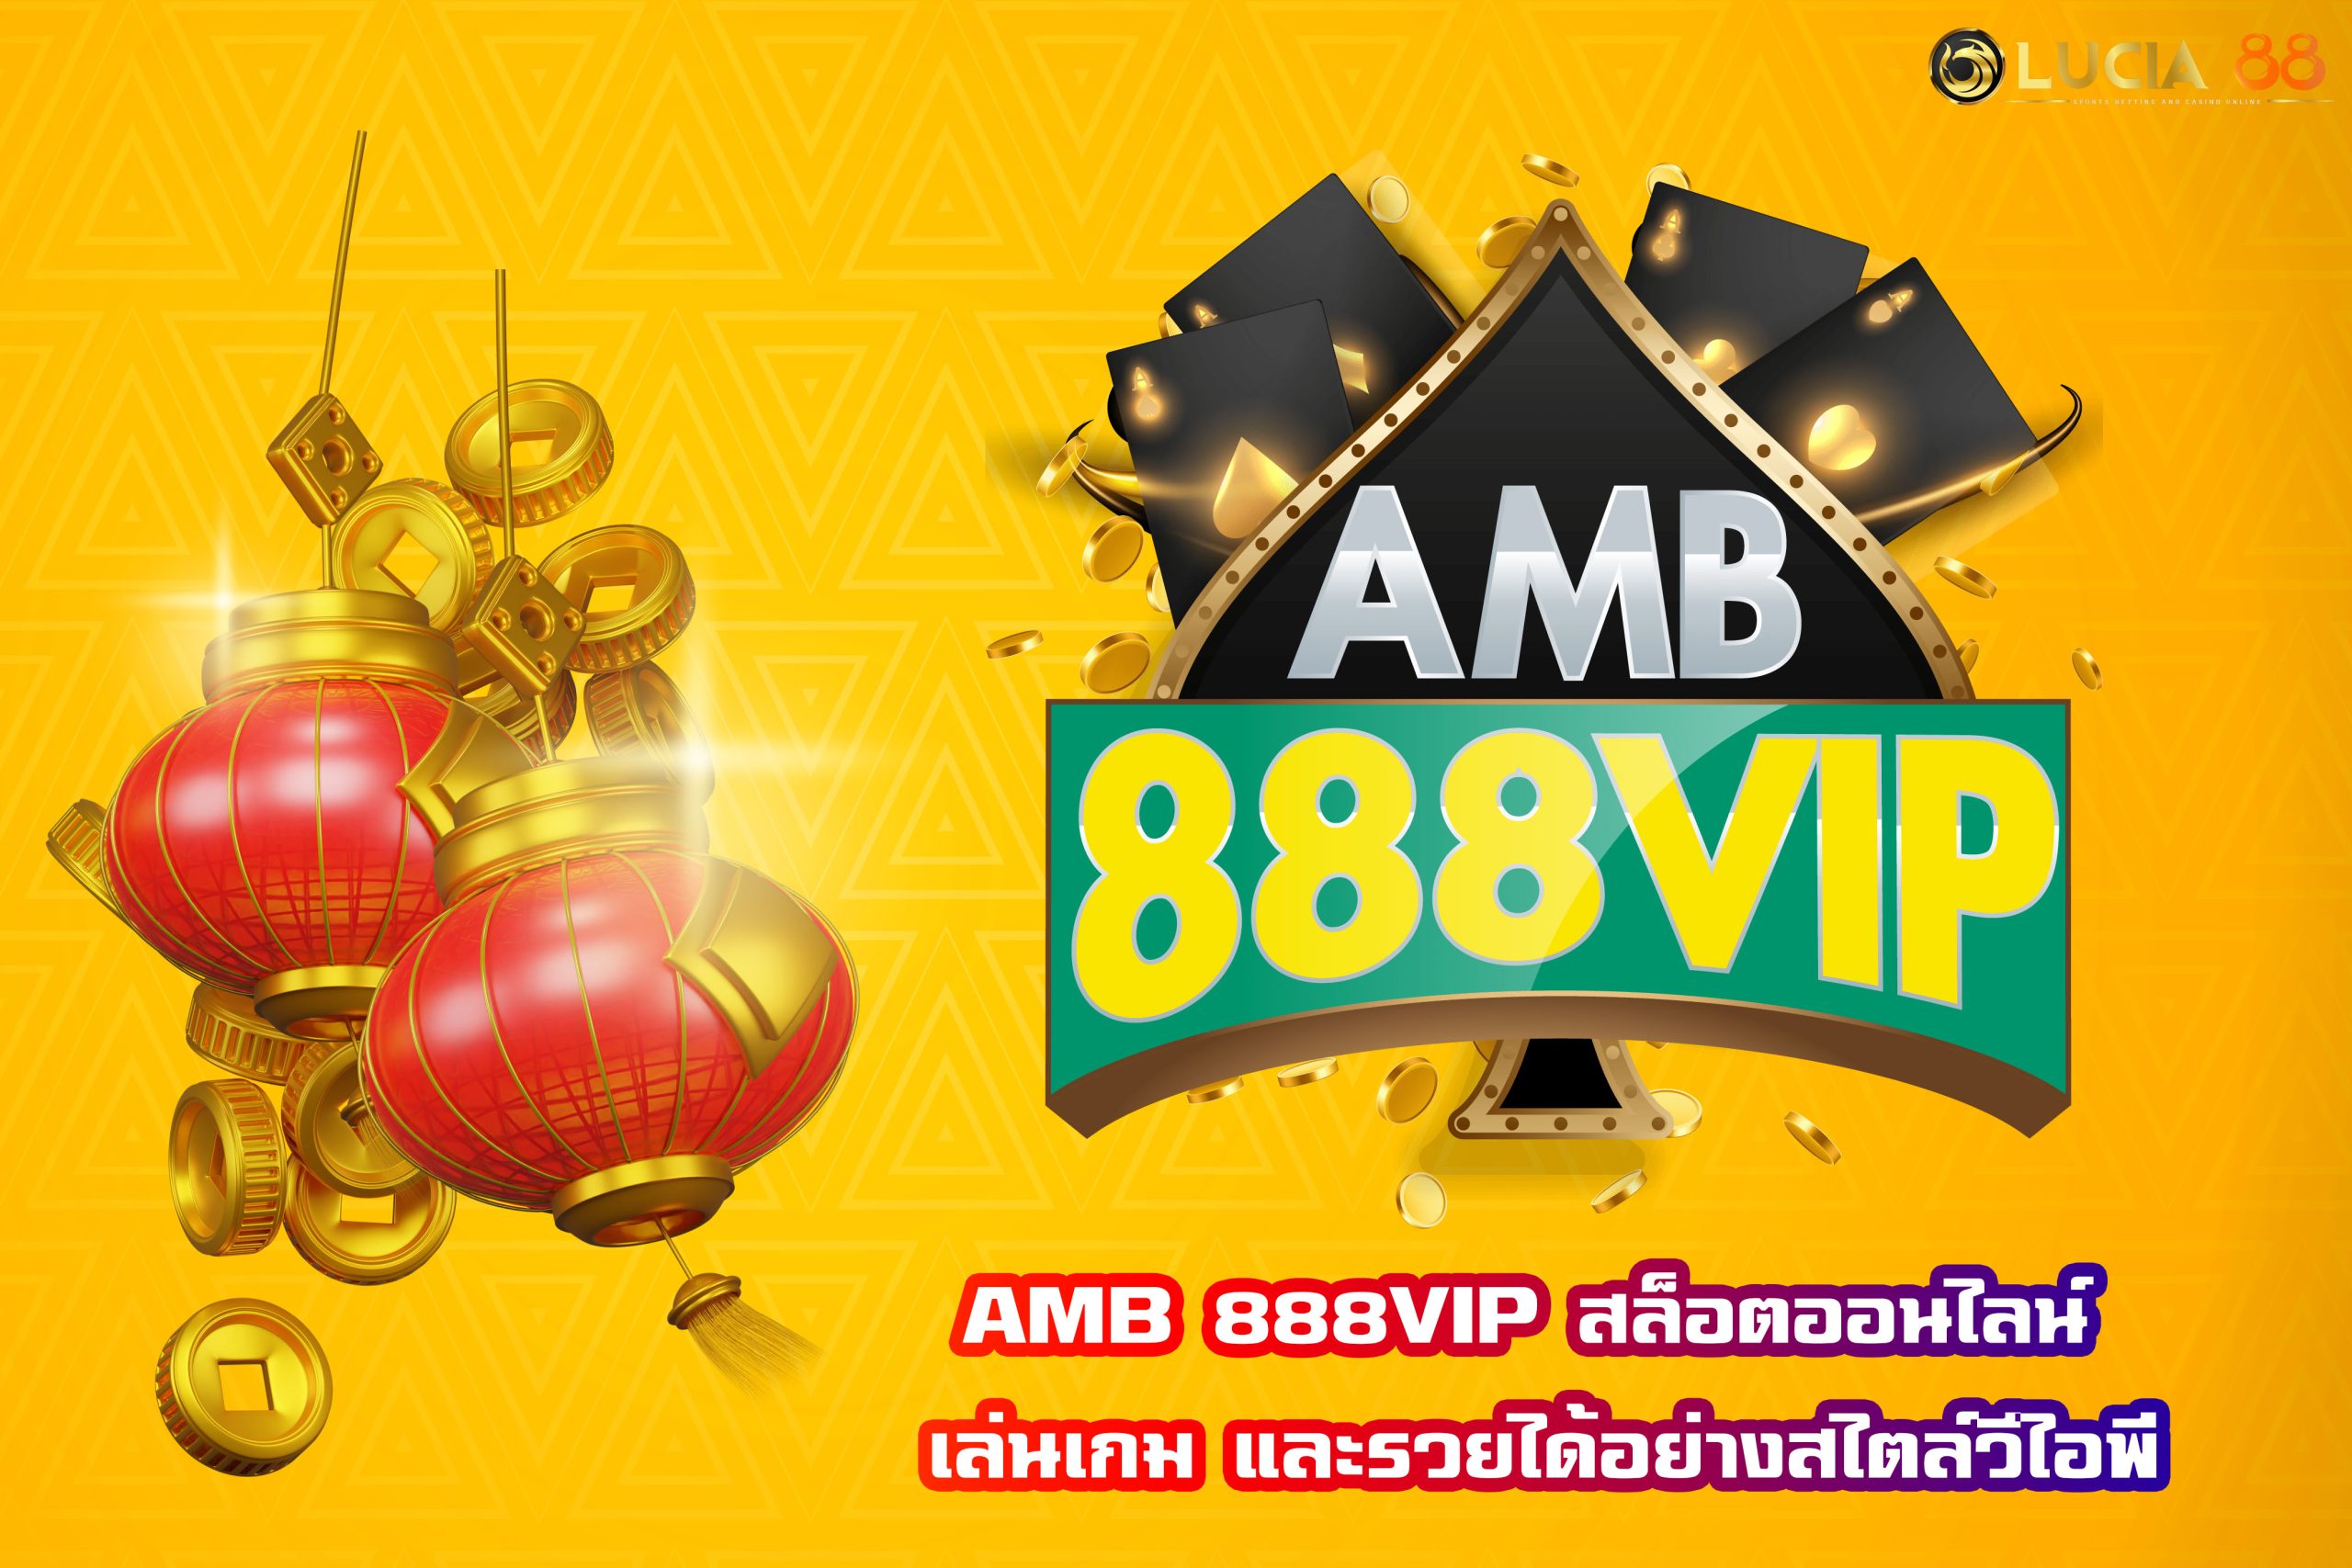 AMB 888VIP สล็อตออนไลน์ เล่นเกม และรวยได้อย่างสไตล์วีไอพี